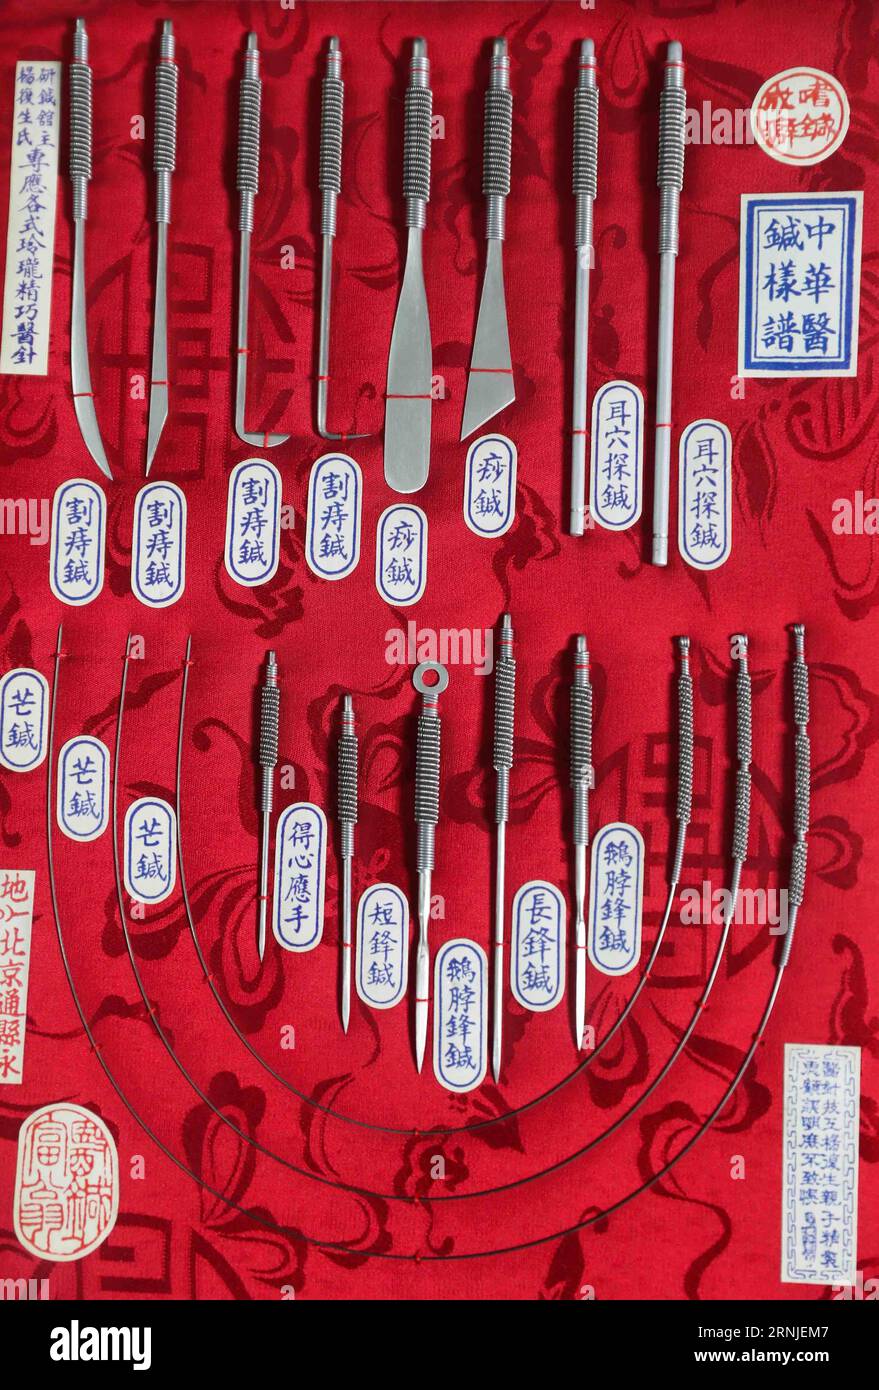 (170120) -- PEKING, 20. Januar 2017 -- Foto aufgenommen am 15. Januar 2017 zeigt eine Reihe von Akupunkturnadeln aus Silber oder Bronze, die von Chinas Tongrentang, einem pharmazeutischen Riesen mit einer Geschichte von mehr als 300 Jahren, in Peking, der Hauptstadt Chinas, gesammelt wurden. Der chinesische Präsident Xi Jinping stellte der Weltgesundheitsorganisation (WHO) in Genf am 18. Januar 2017 eine Akupunkturstatue aus Bronze vor, die Akupunkturpunkte am menschlichen Körper zeigt. Nach Angaben der WHO haben 103 Mitglieder der Praxis der Akupunktur und Moxibustion zugestimmt, 29 haben Sonderstatuten über t erlassen Stockfoto